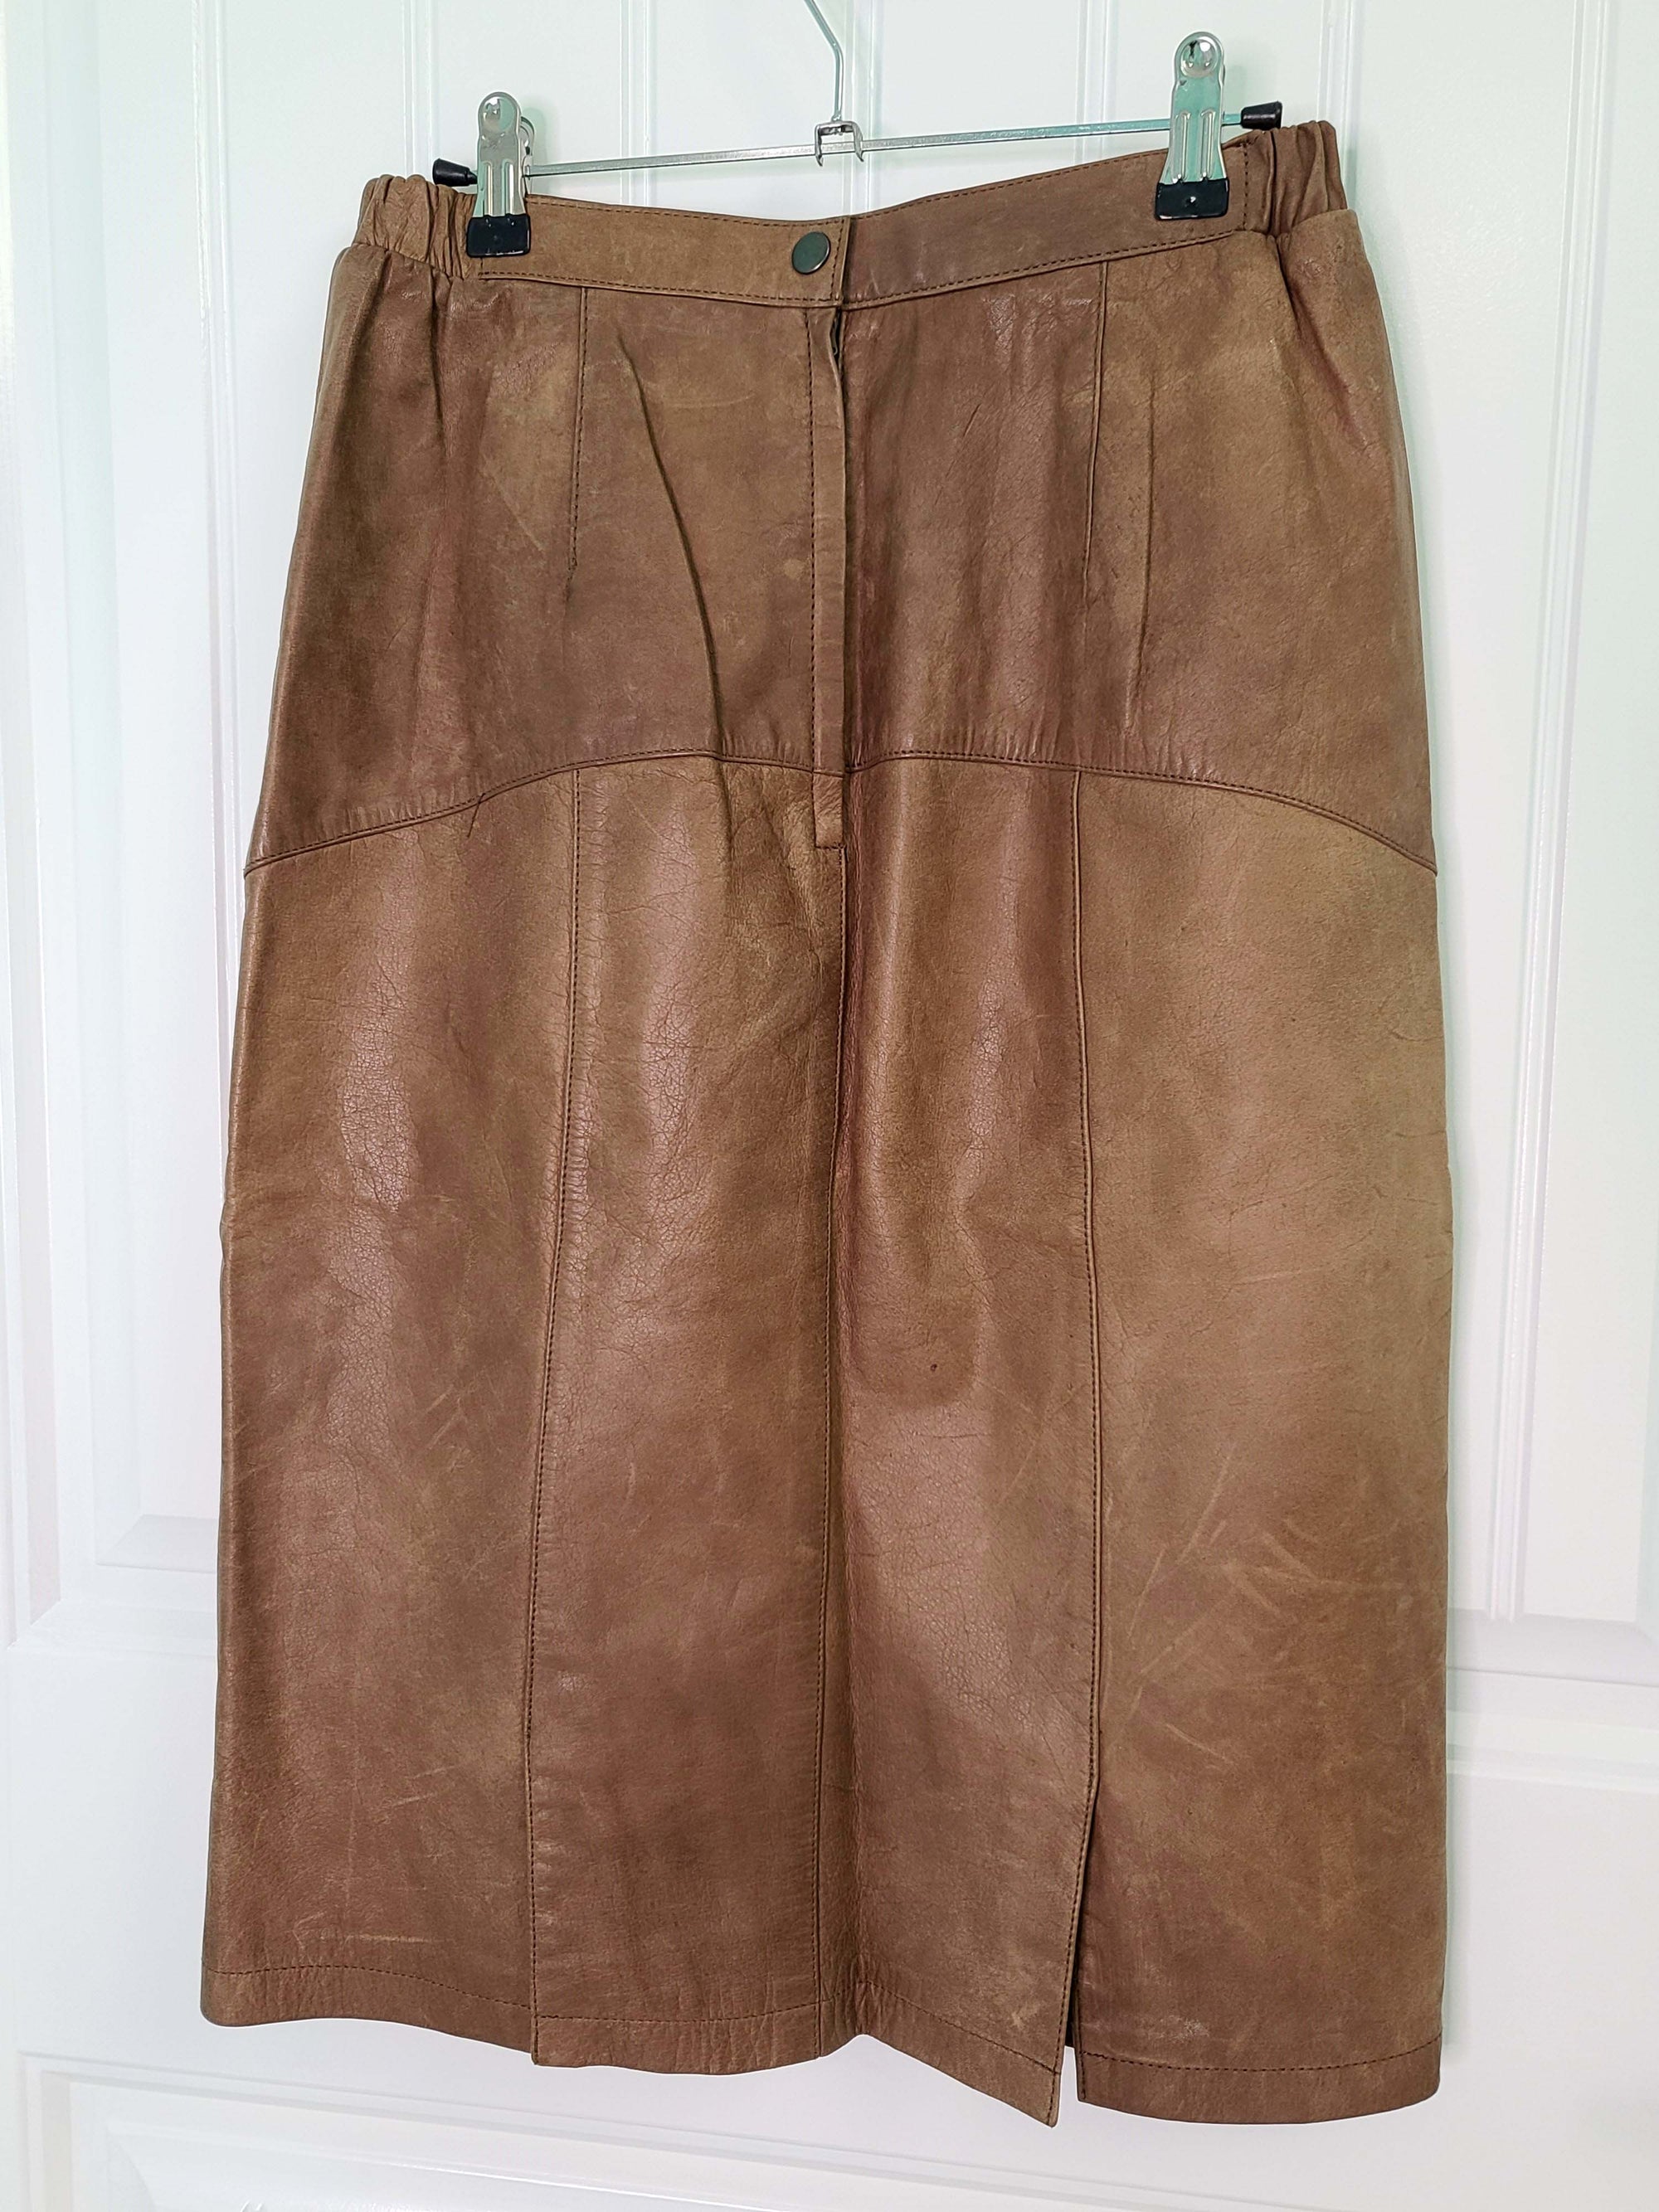 Jacqueline Ferrar Leather Skirt (12)